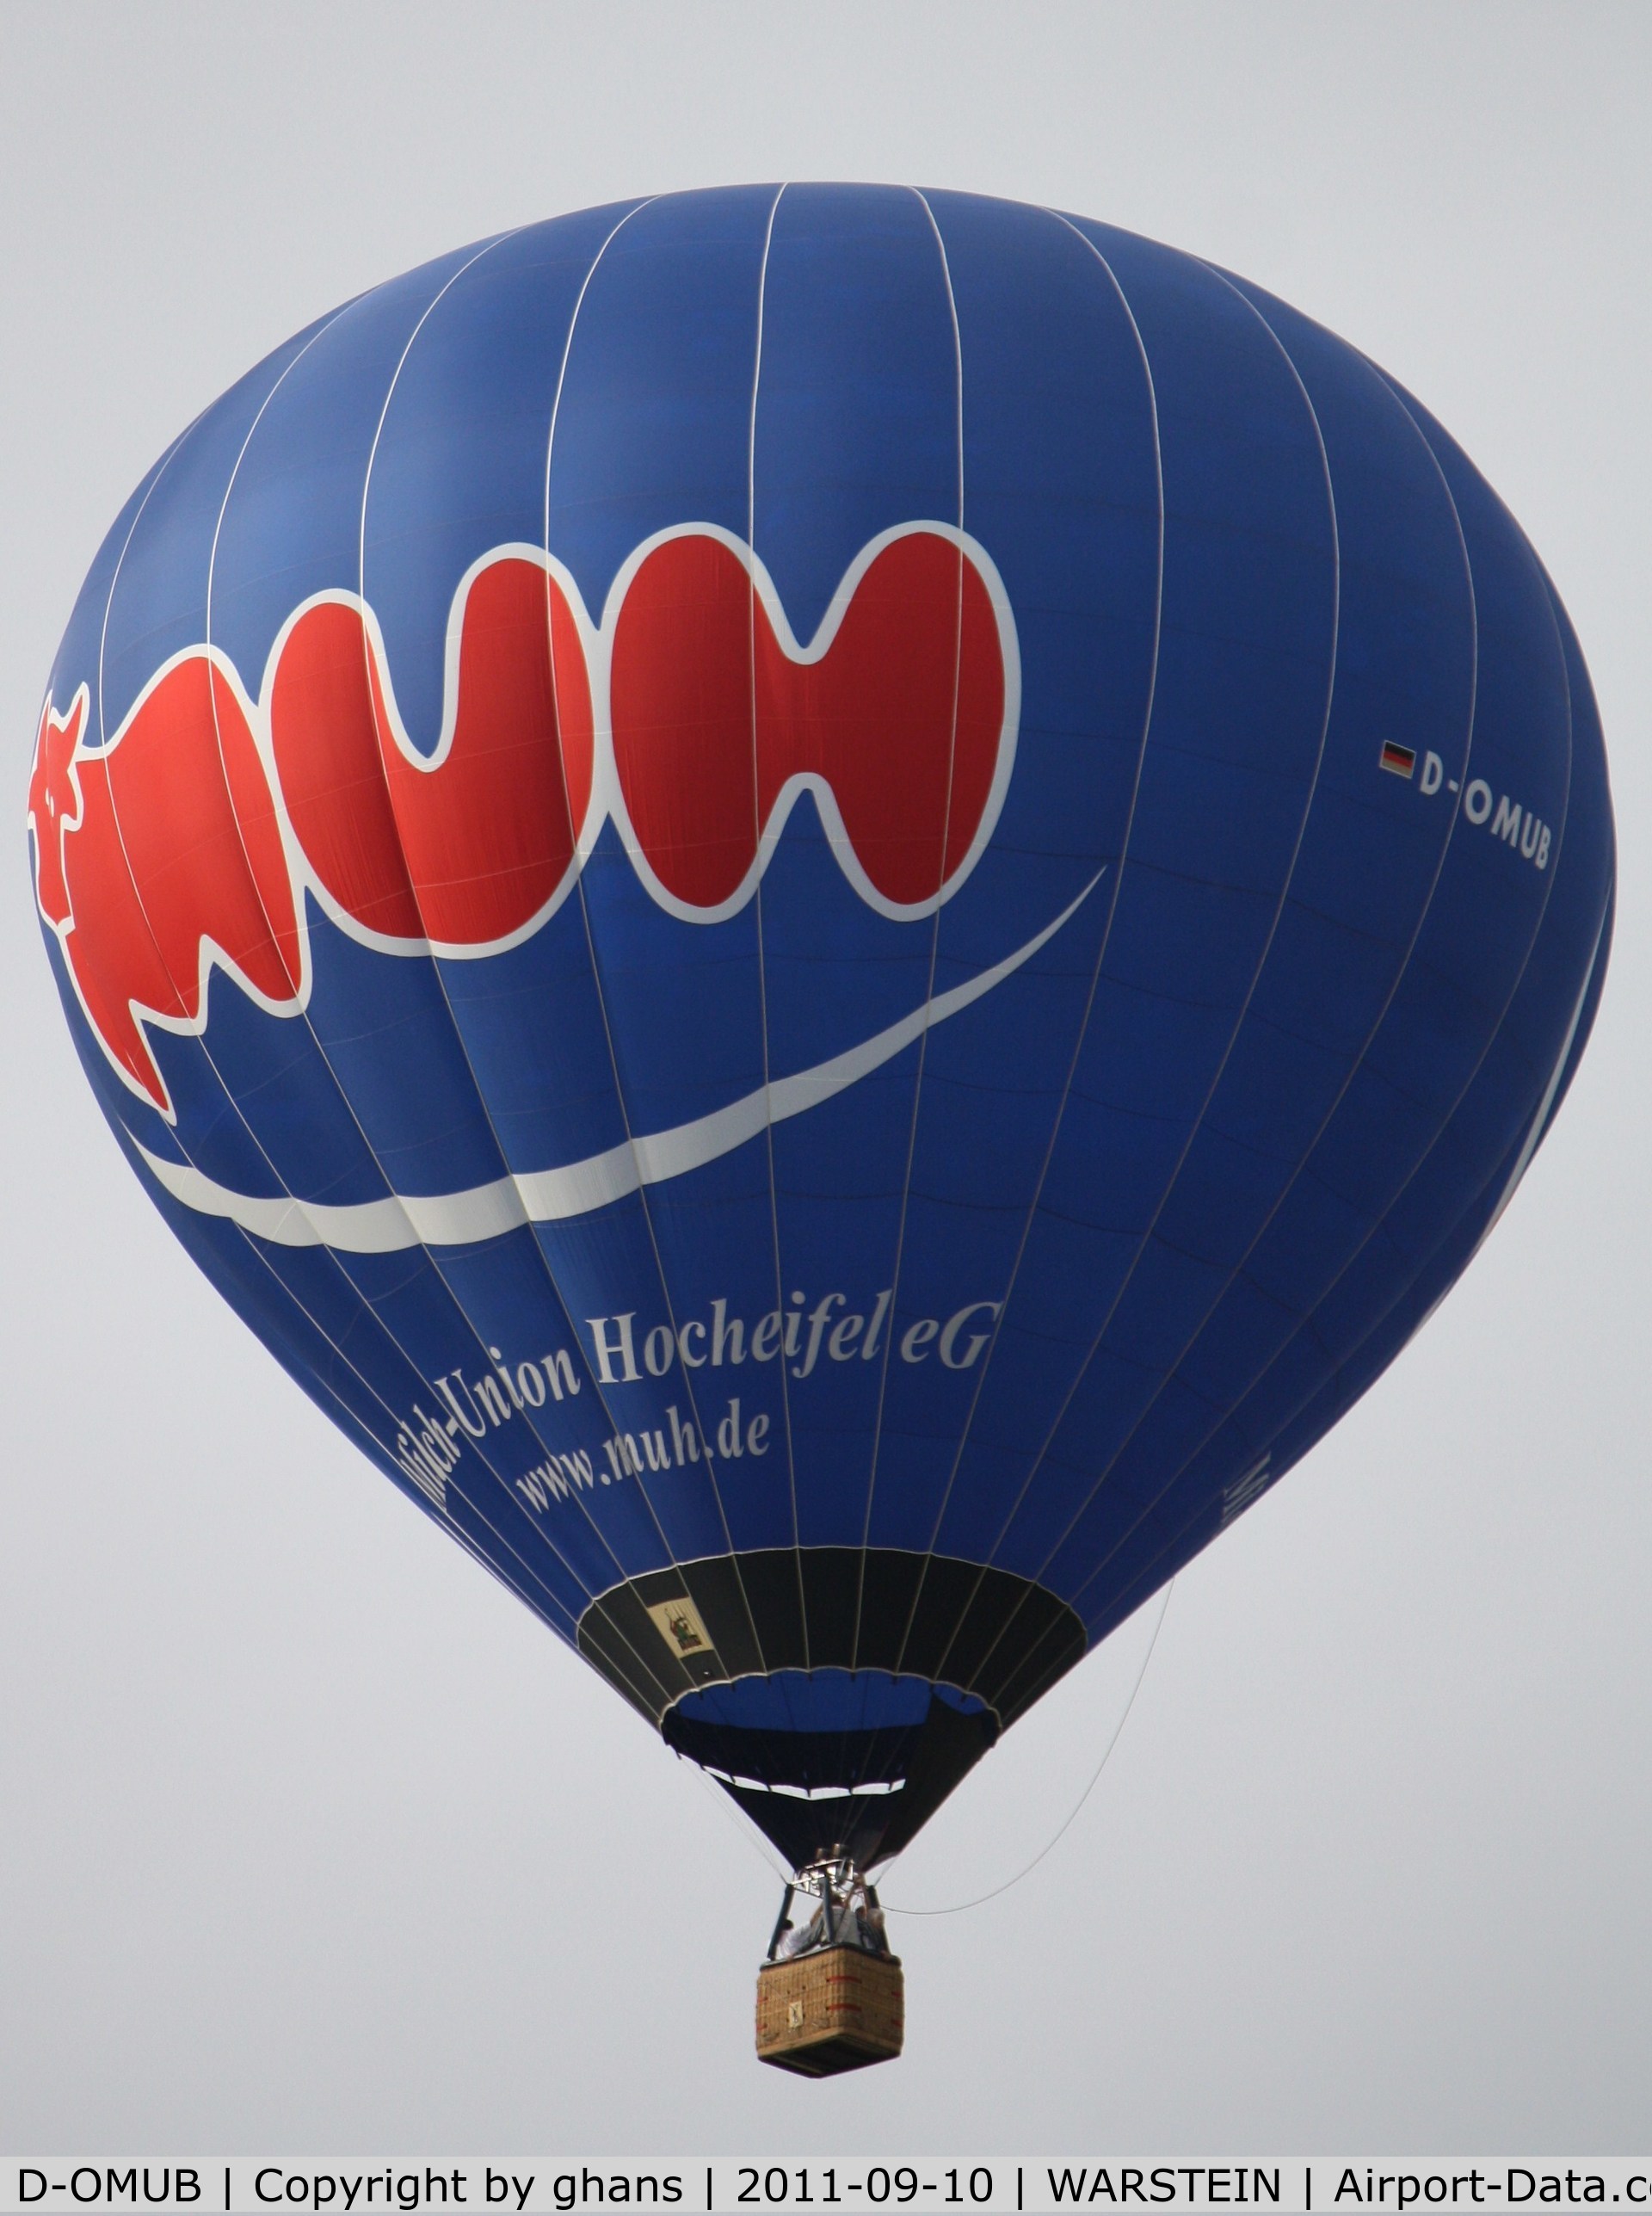 D-OMUB, 2003 Schroeder Fire Balloons G C/N 1029, WIM 2011 'Muh Milch-Union Hocheifel'